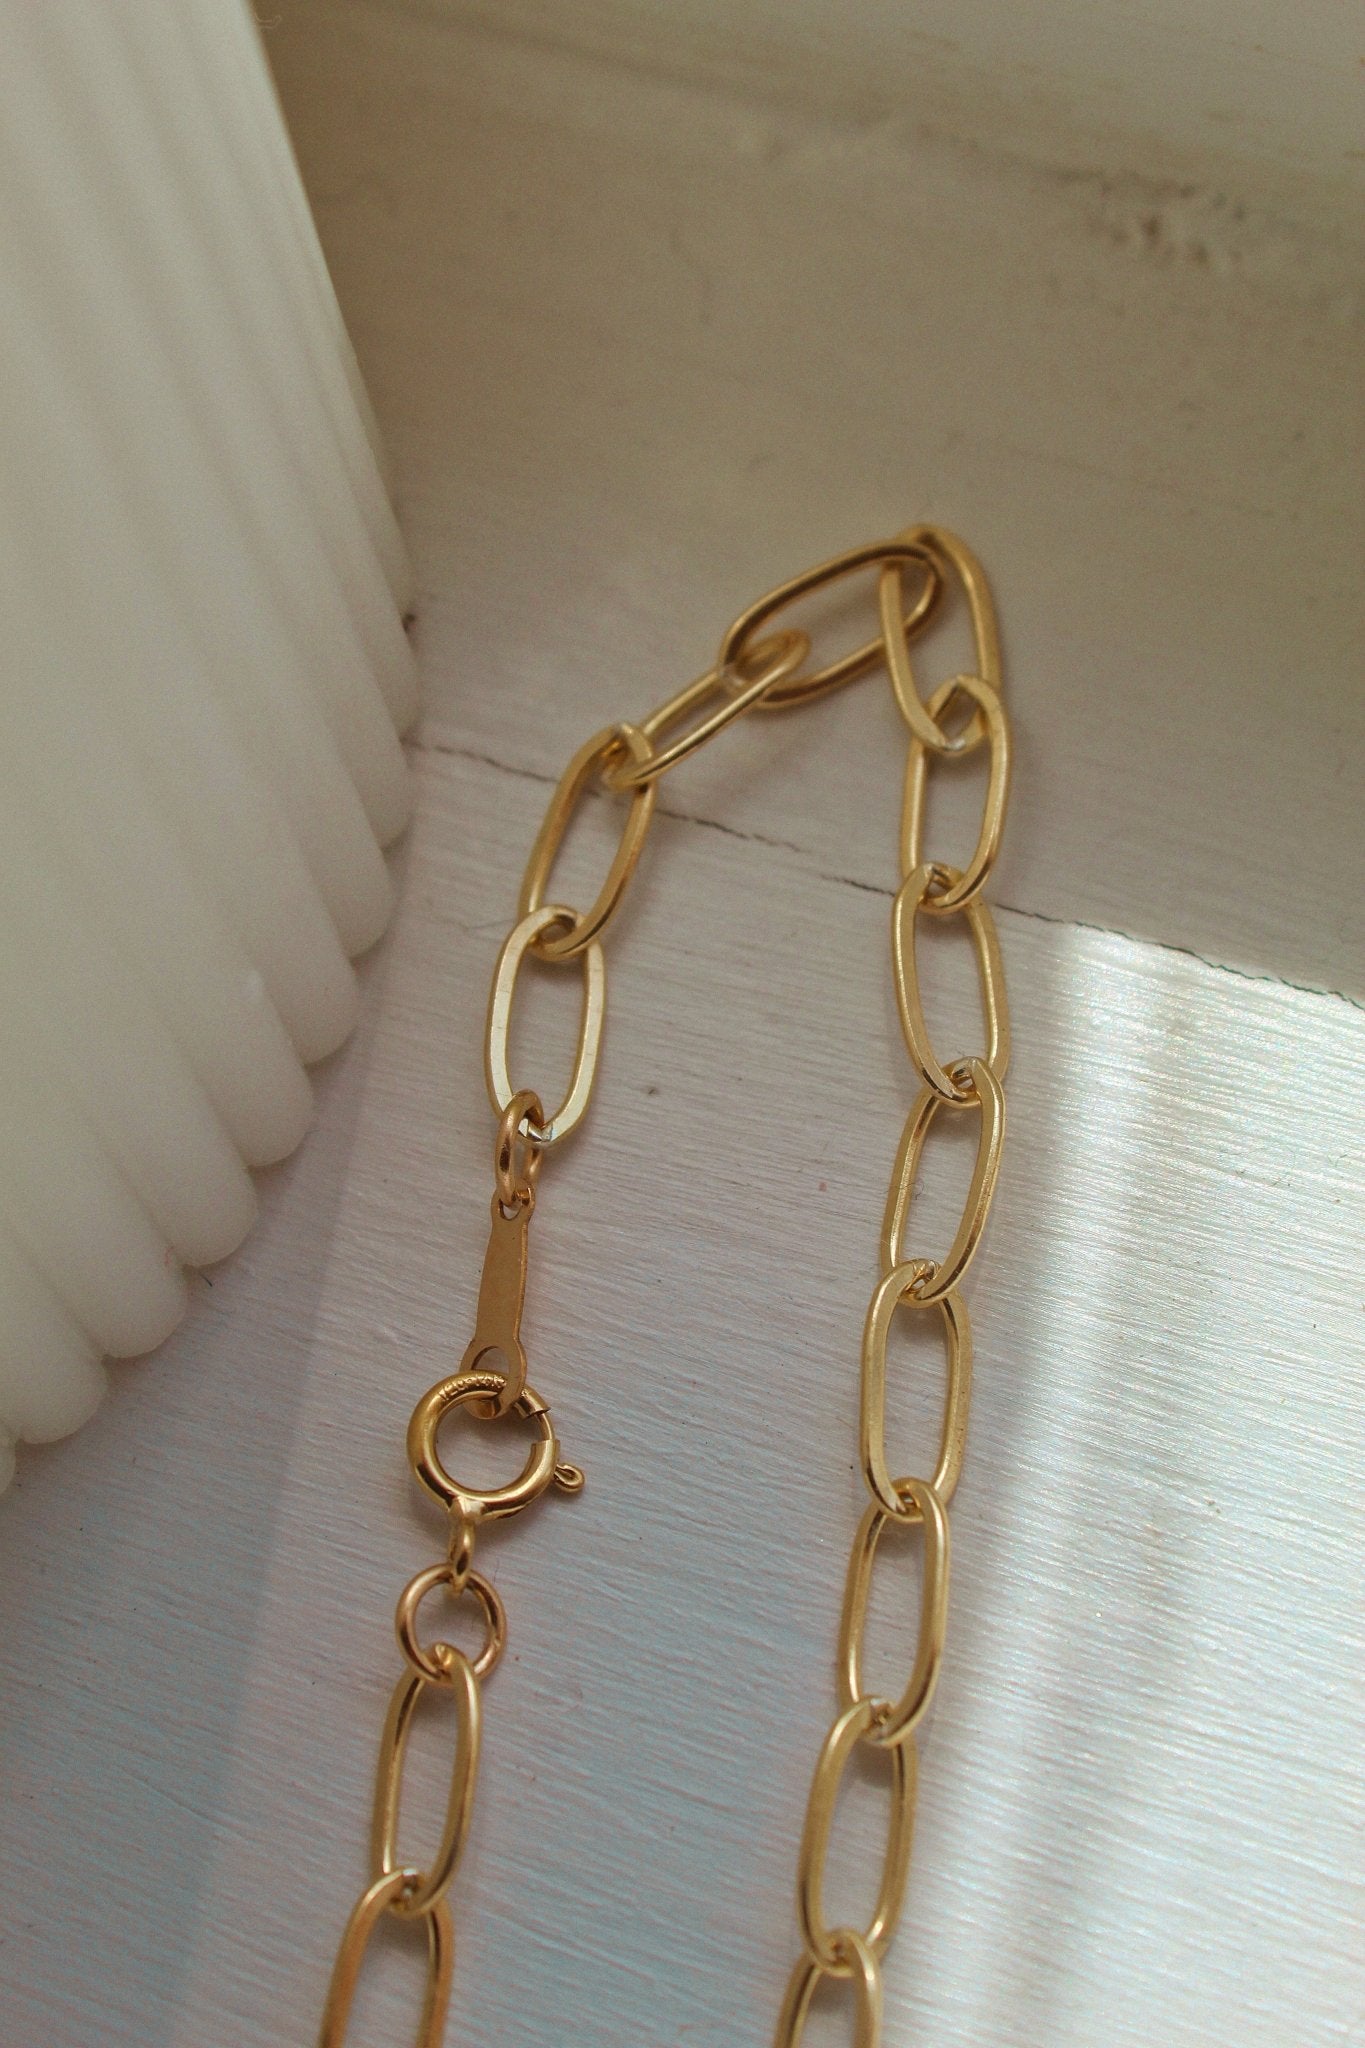 14k Gold Chunky Cable Bracelet - Jewellery Hut